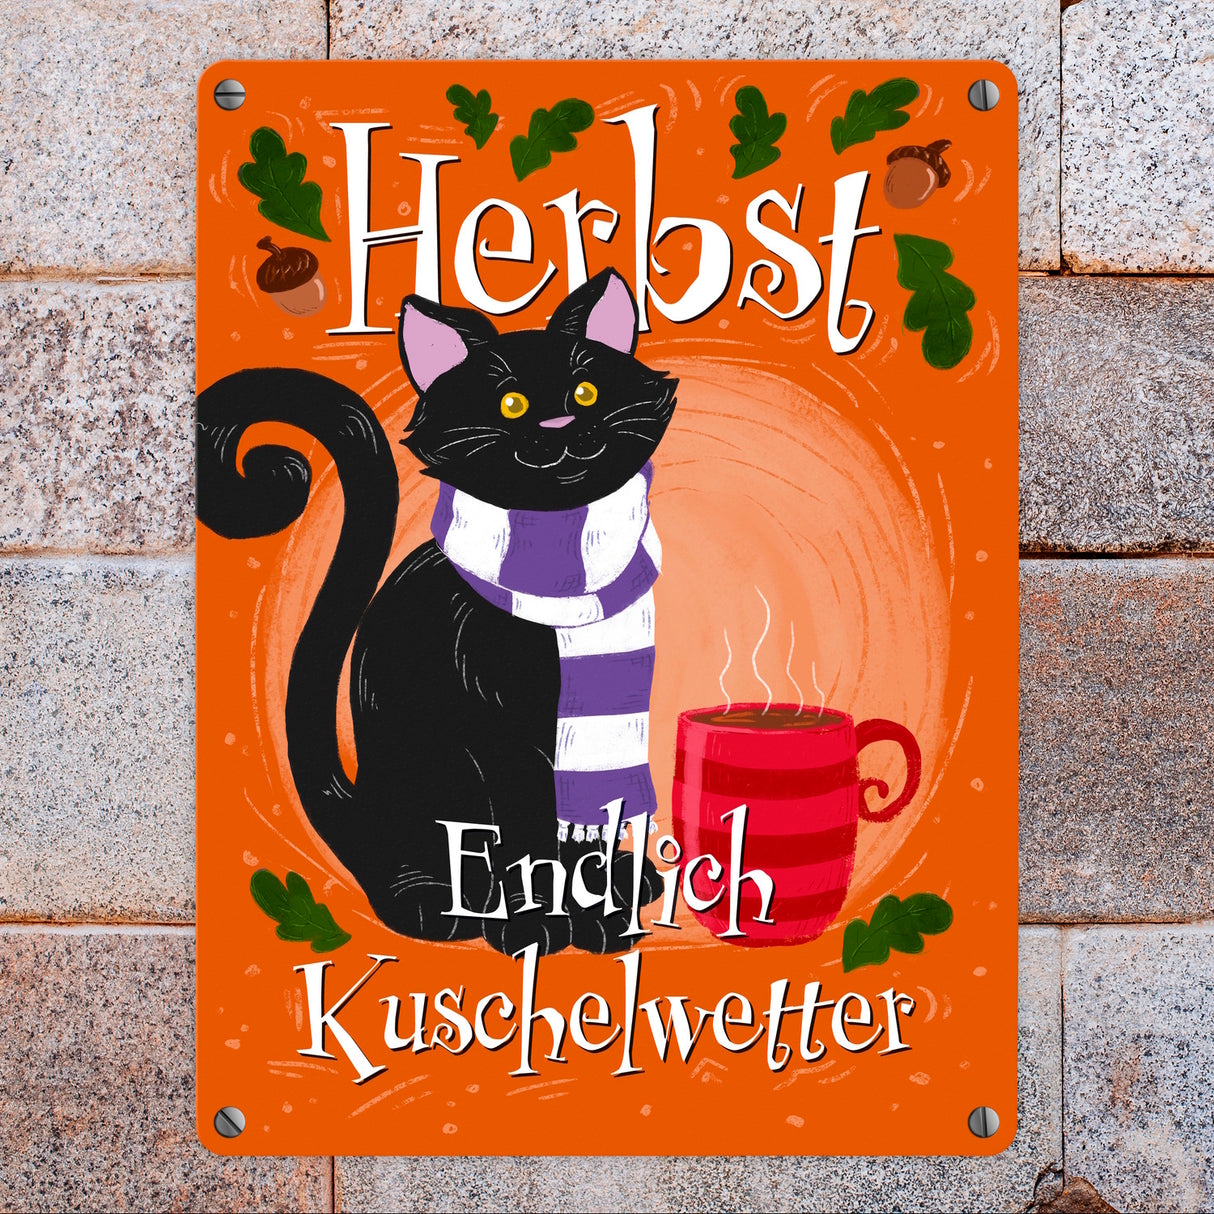 Herbst - Endlich Kuschelwetter Metallschild mit schwarzer Katze